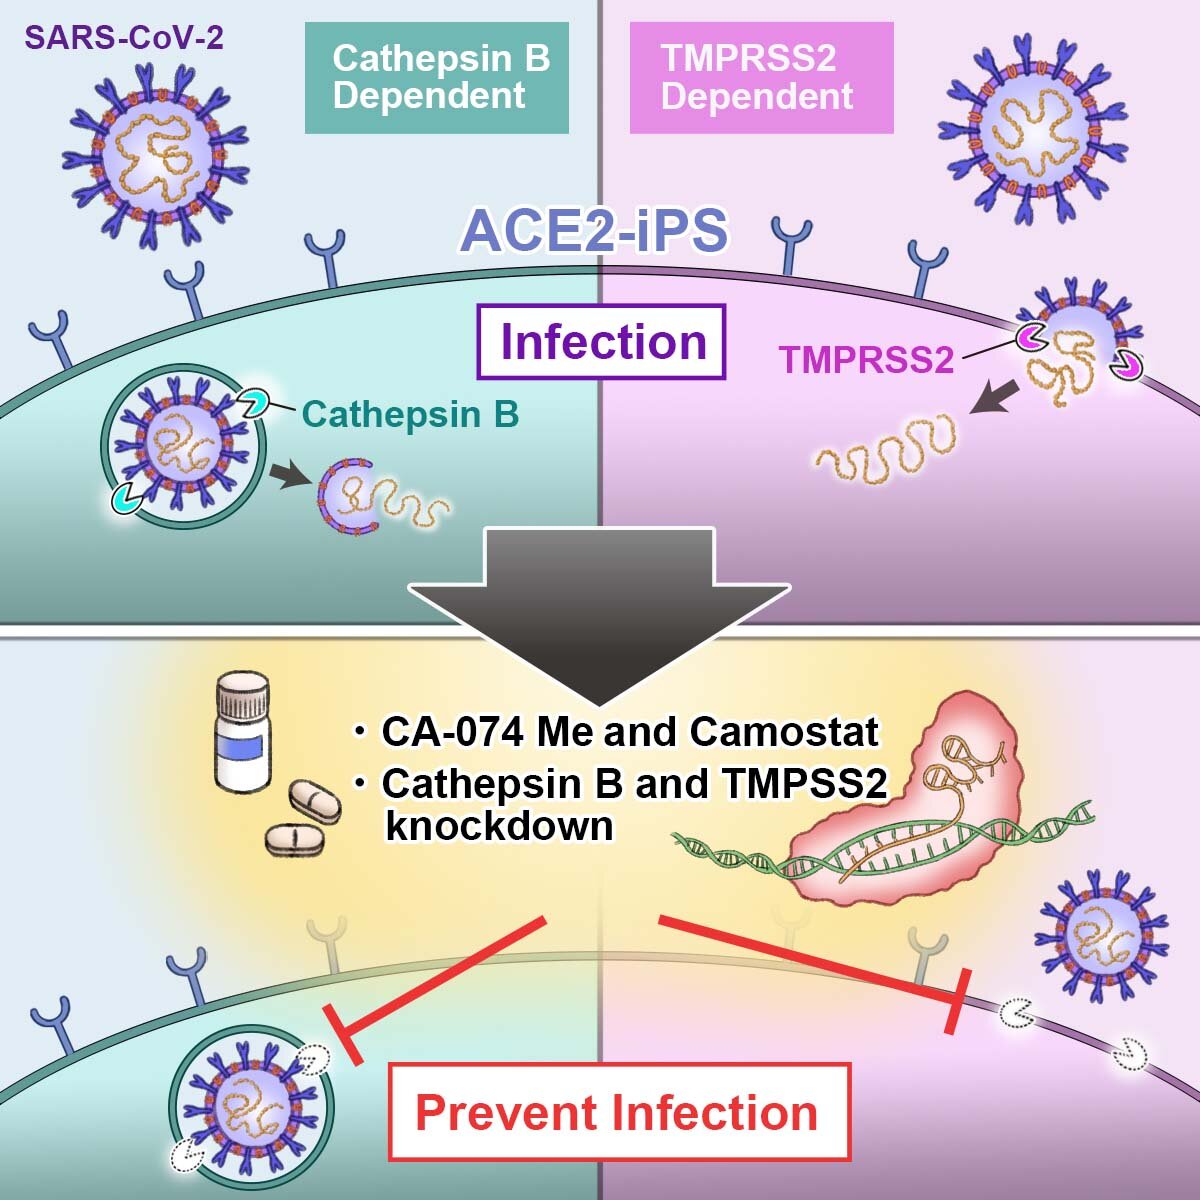 Un cocktail di farmaci ferma l'infezione da SARS-CoV-2 delle cellule staminali